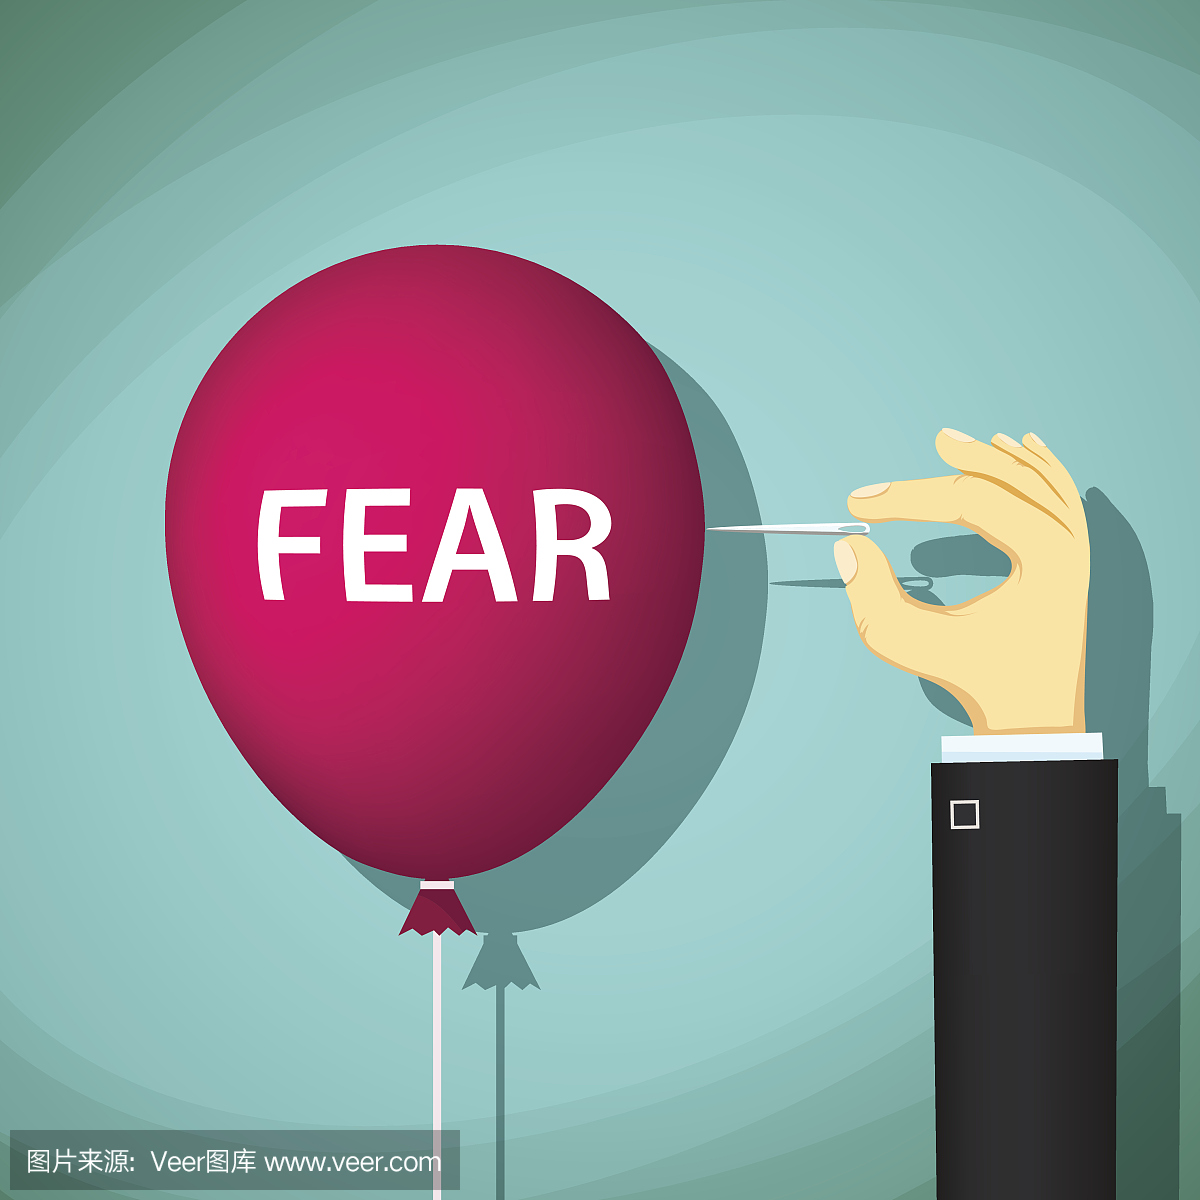 男人爆发一个气球与恐惧一词。